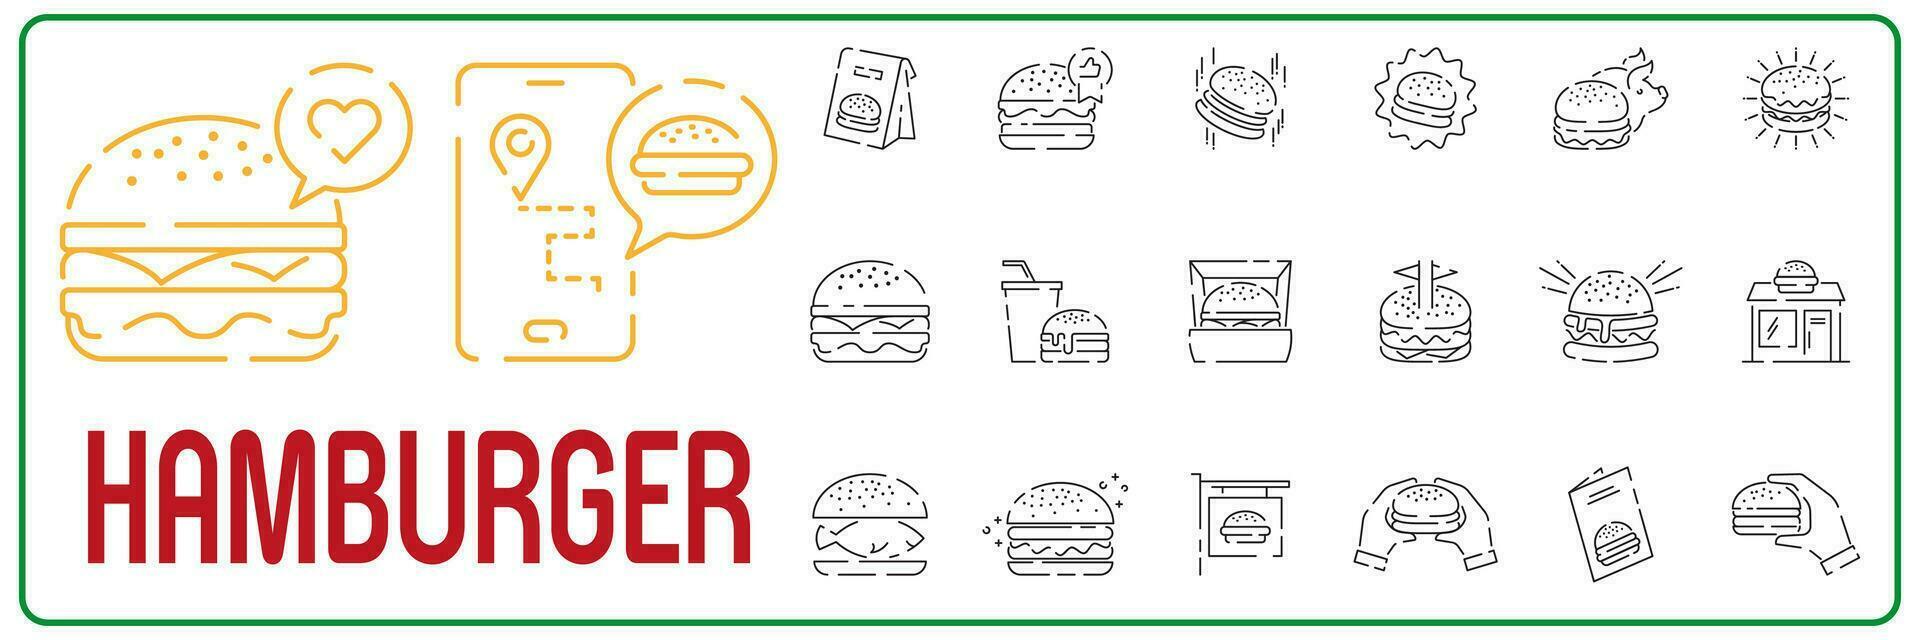 reeks van hamburger verwant vector lijn pictogrammen. Hamburger of cheeseburger, broodje, steak, straat voedsel, kaas, sauzen, grill, snel voedsel, cafe. rommel voedsel ongezond.